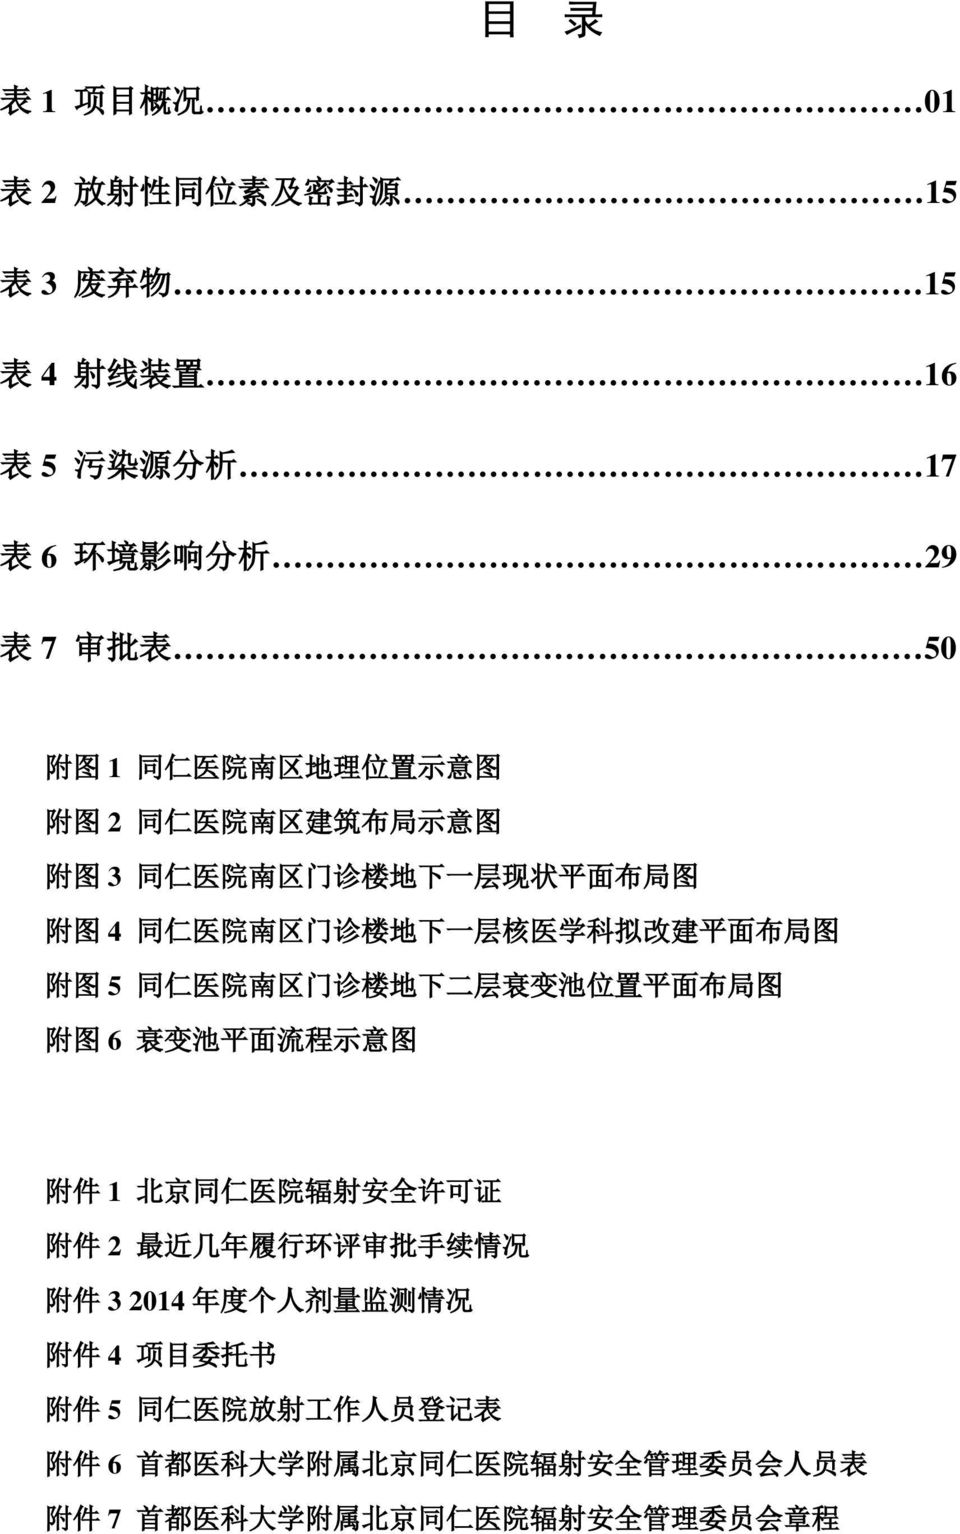 地 下 二 层 衰 变 池 位 置 平 面 布 局 图 附 图 6 衰 变 池 平 面 流 程 示 意 图 附 件 1 北 京 同 仁 医 院 辐 射 安 全 许 可 证 附 件 2 最 近 几 年 履 行 环 评 审 批 手 续 情 况 附 件 3 2014 年 度 个 人 剂 量 监 测 情 况 附 件 4